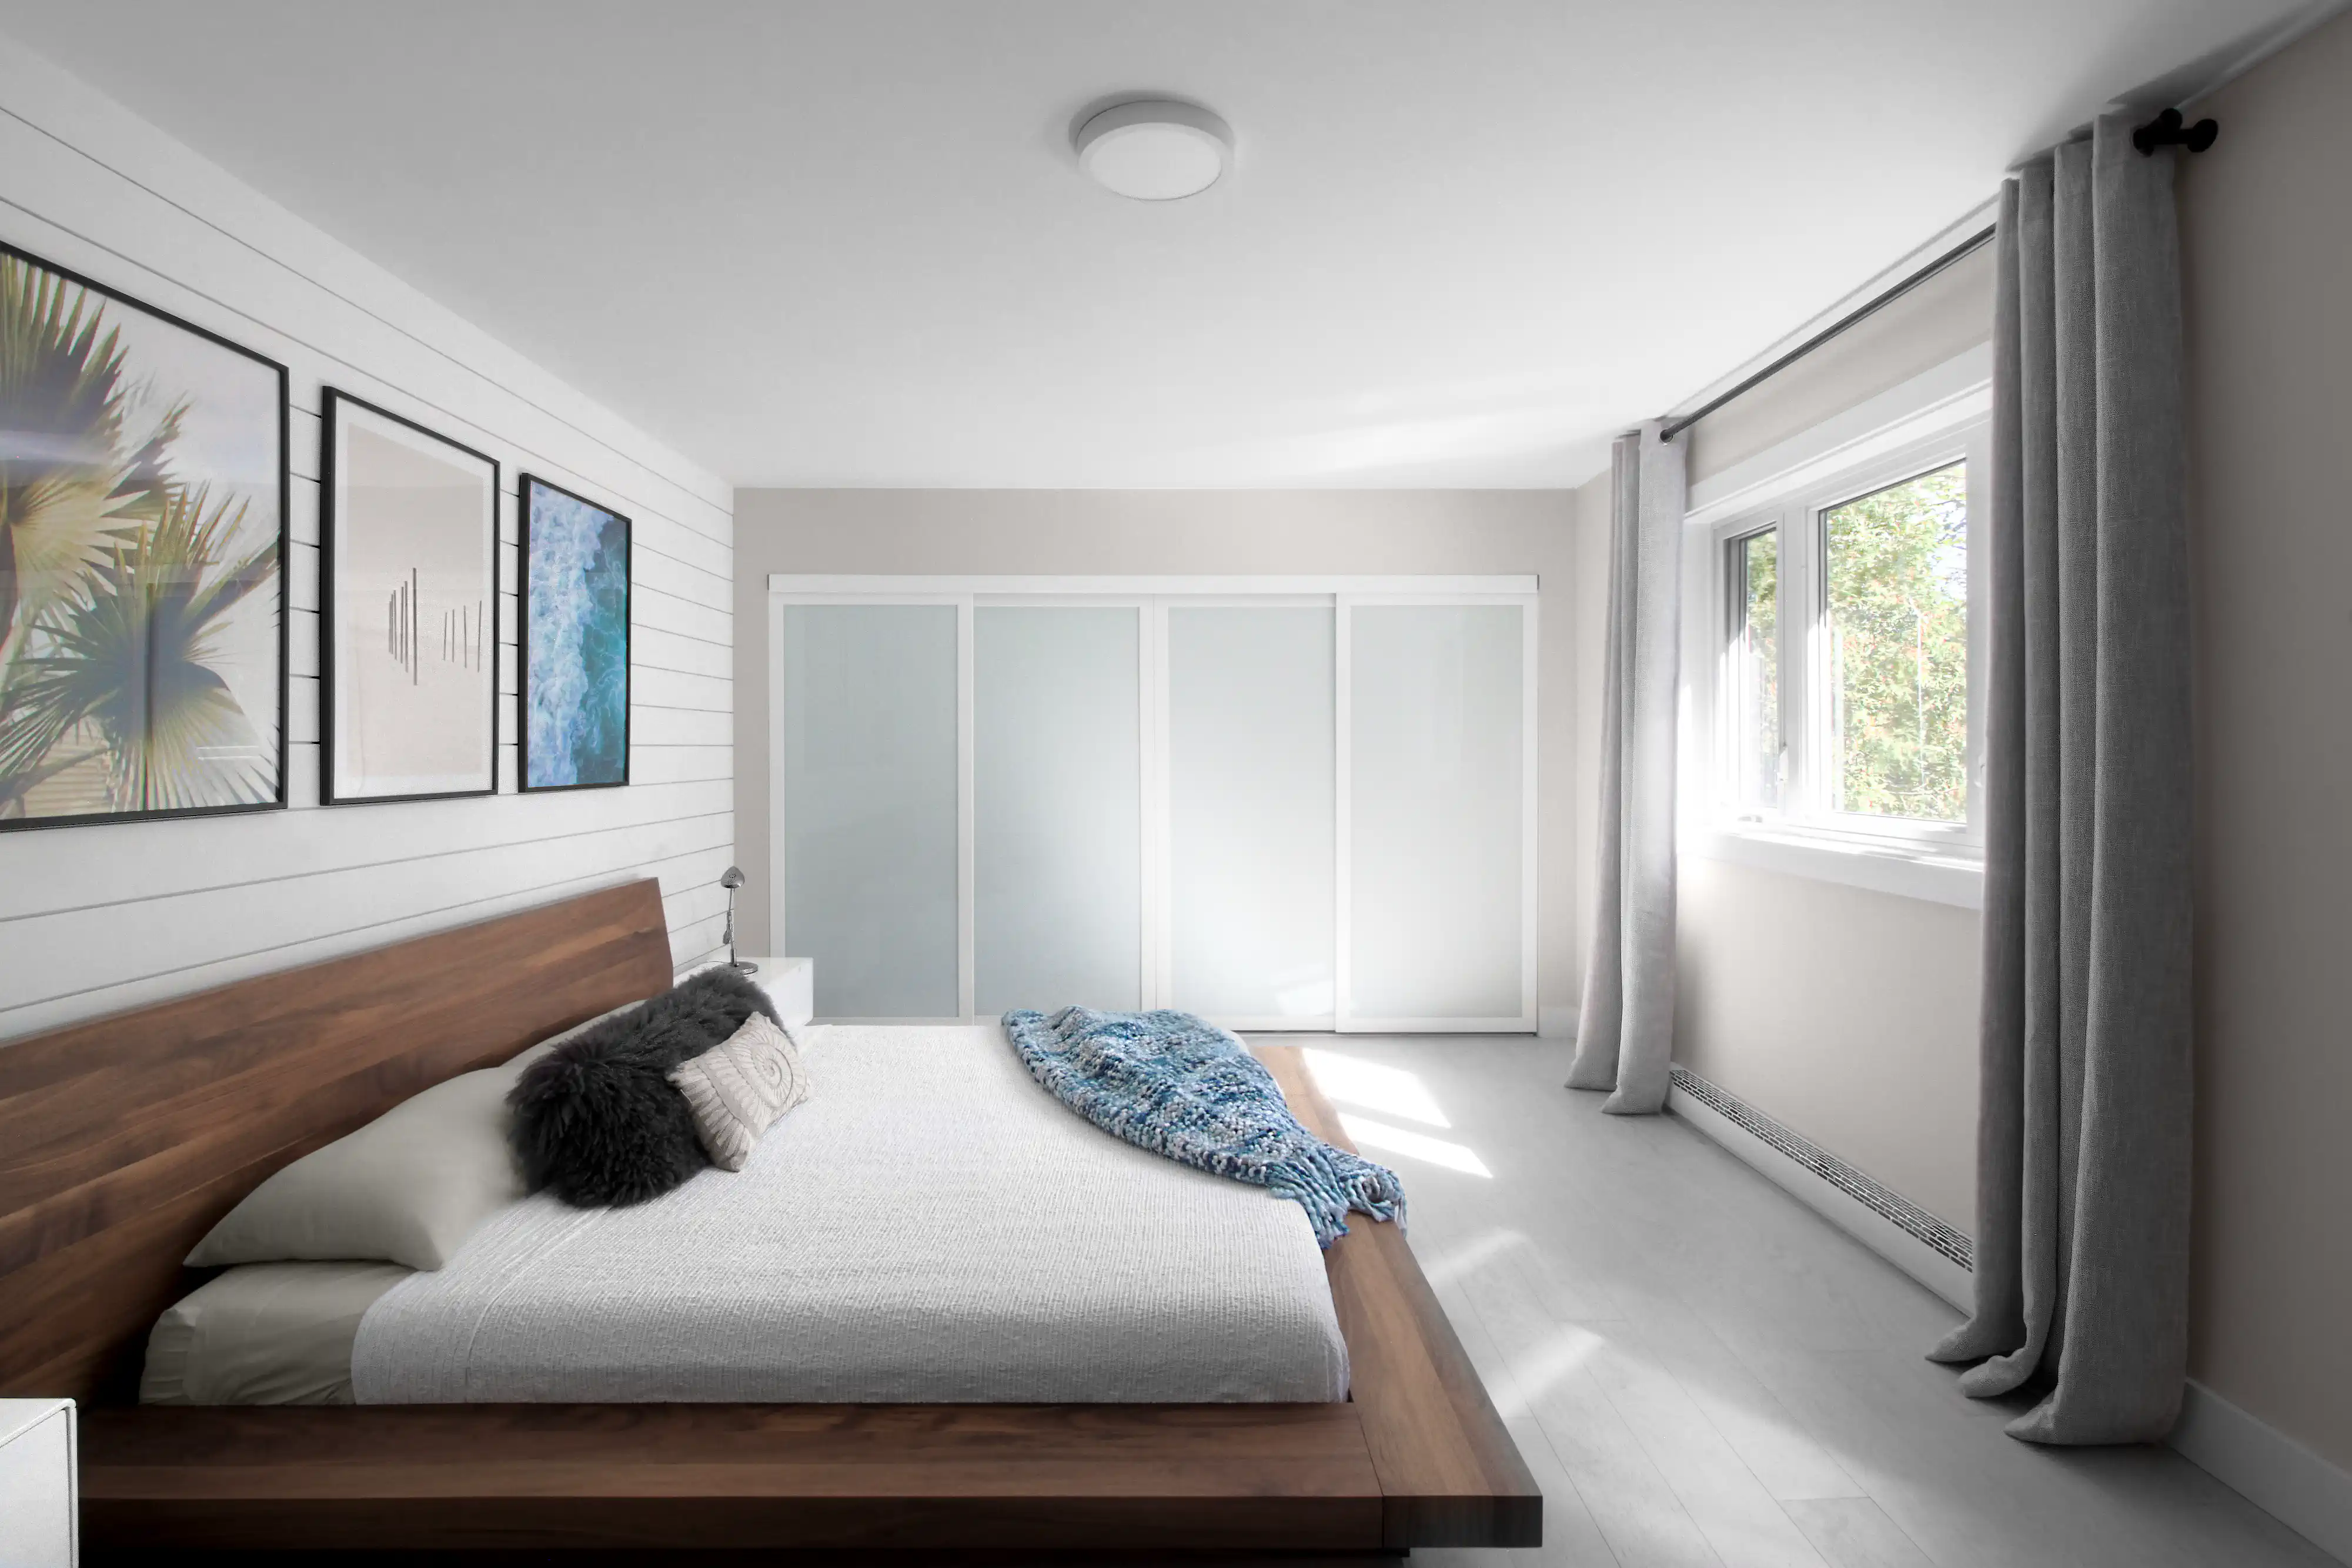 Chambre moderne avec un lit en plateforme en bois, une couverture jetée bleue, des rideaux gris et une vue sur des arbres verts, intérieur signé Sarah Brown Design